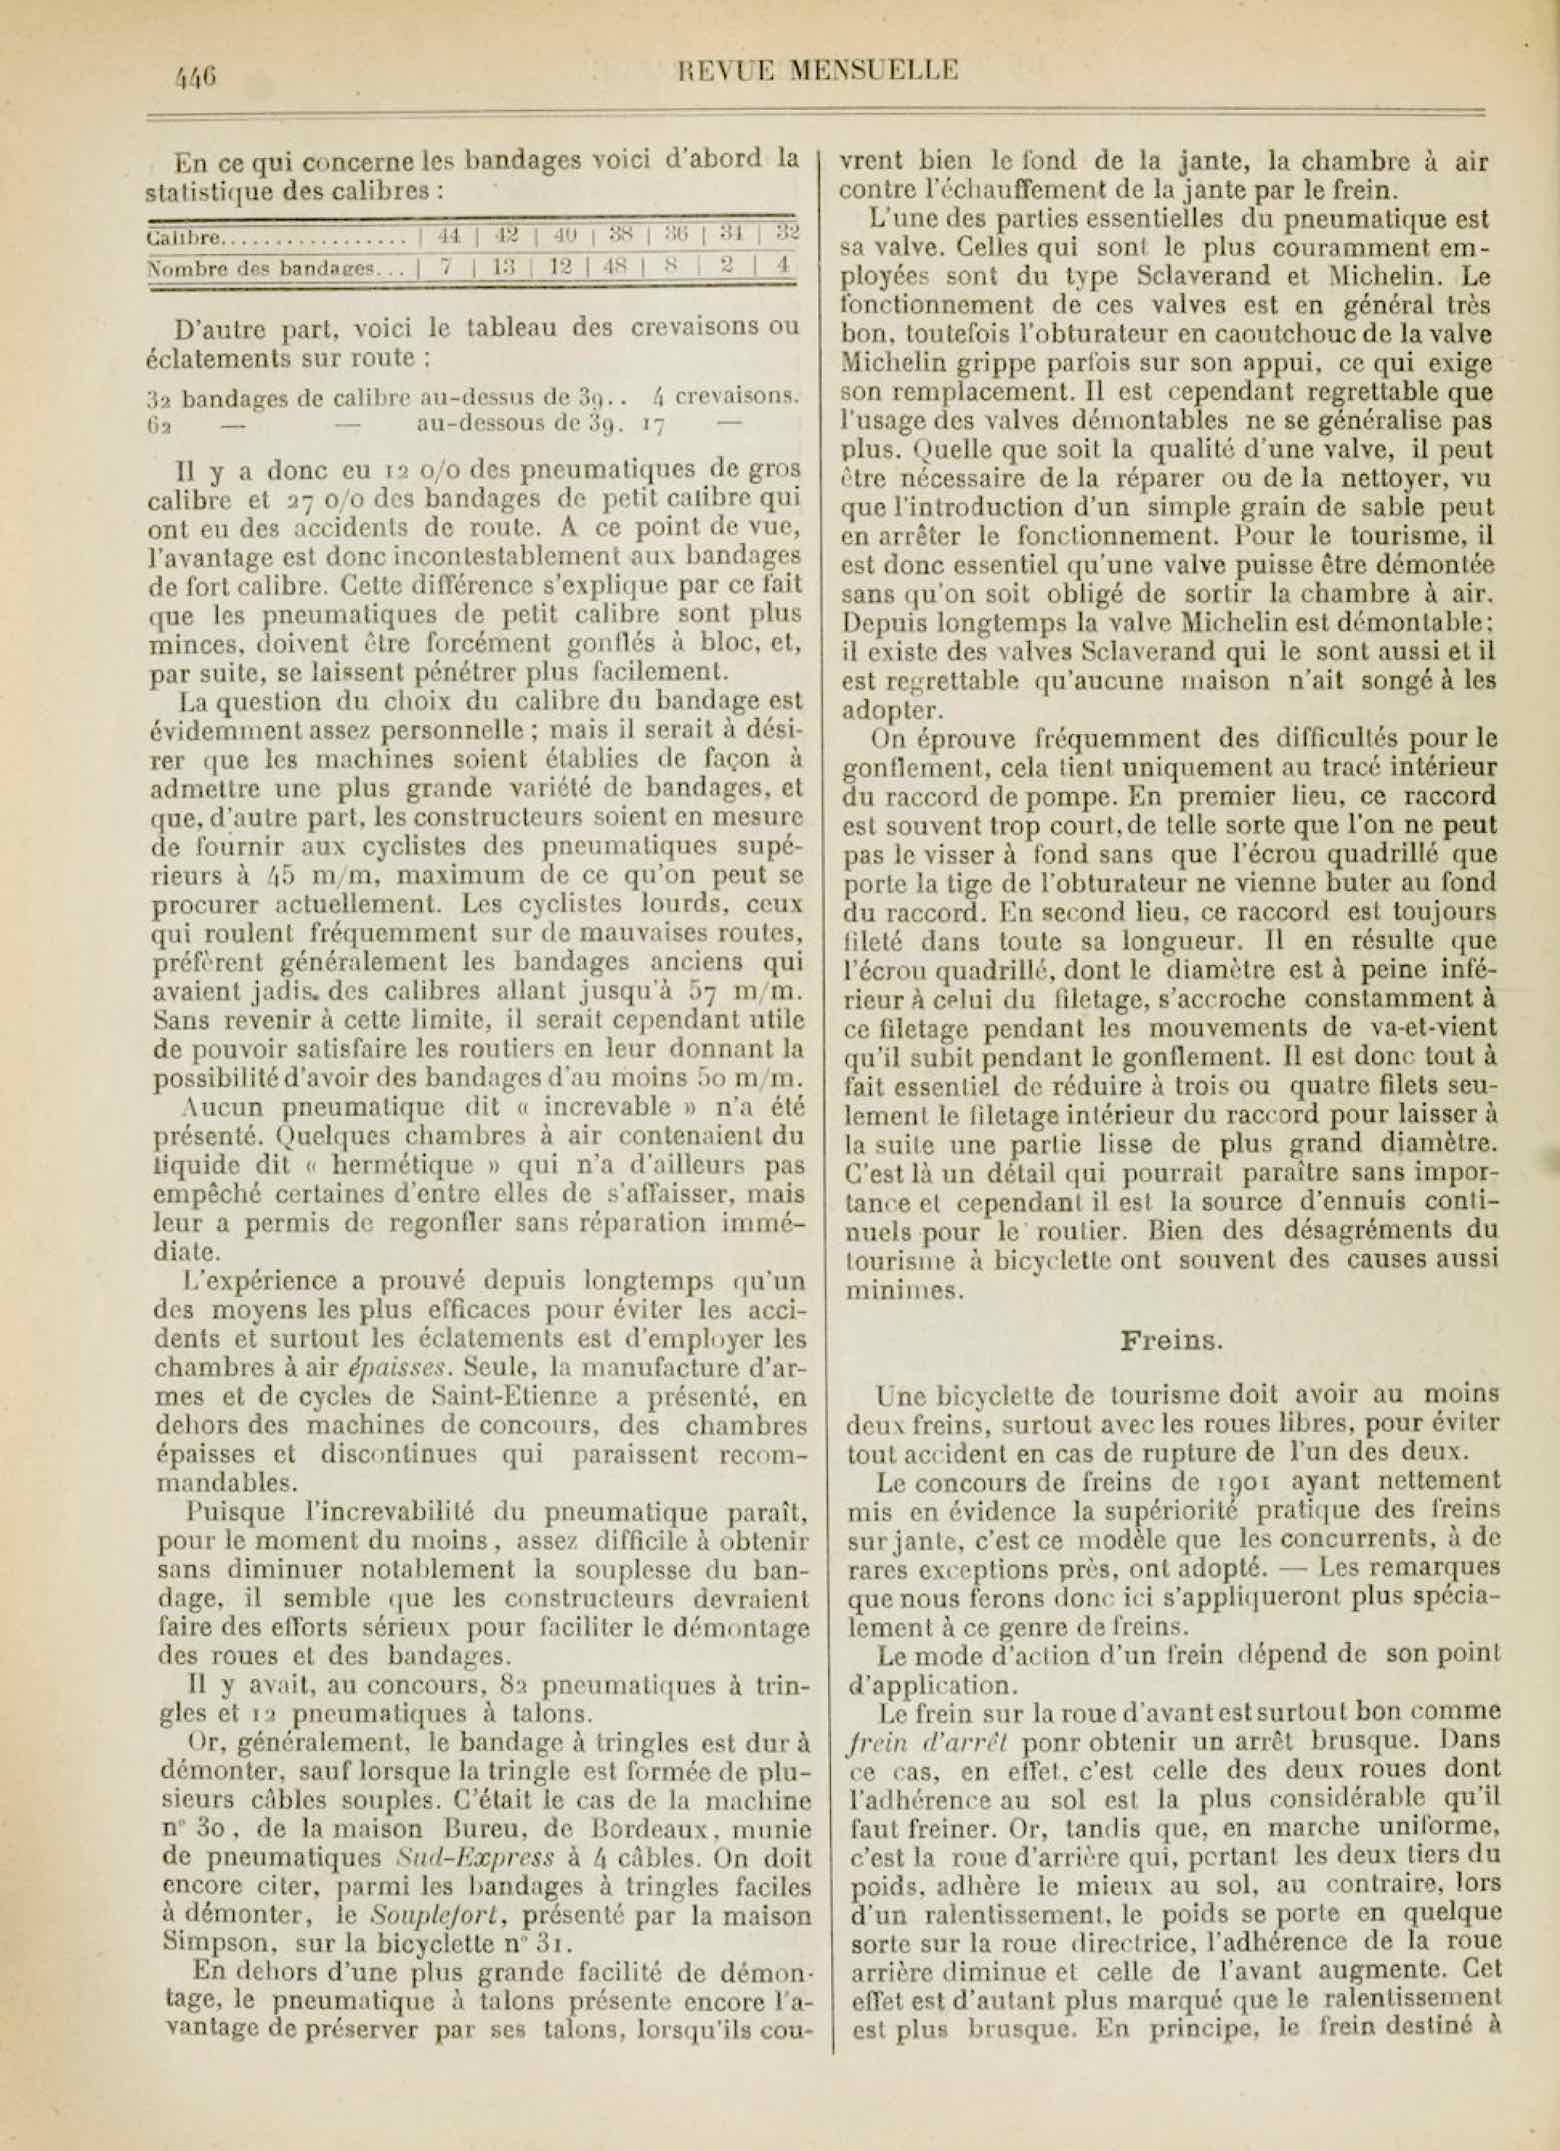 T.C.F. Revue Mensuelle October 1902 - Concours de Bicyclettes de Tourisme (part IV) scan 13 main image